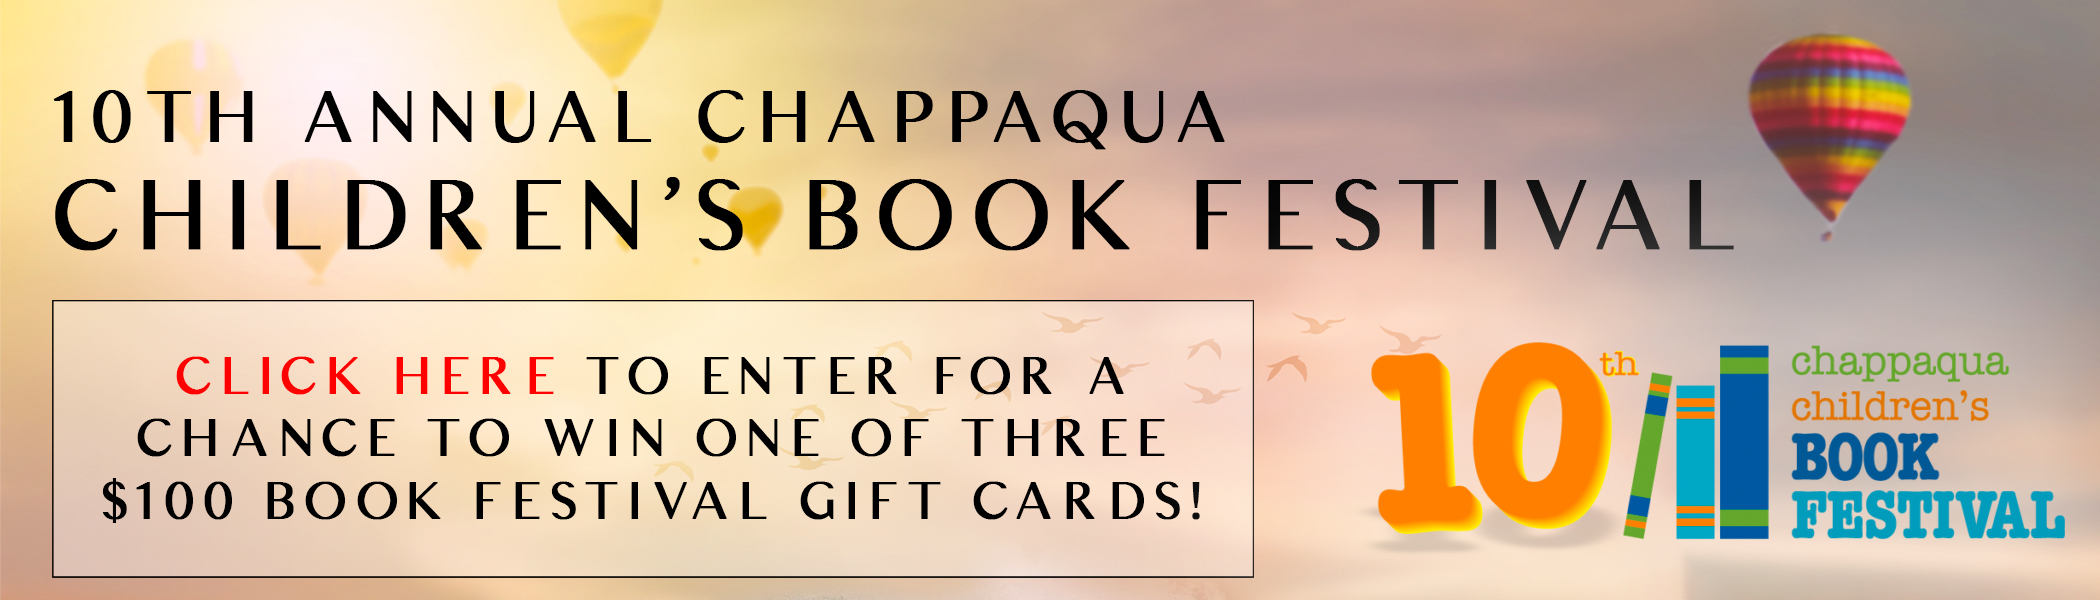 10th Annual Chappaqua Children's Book Festival